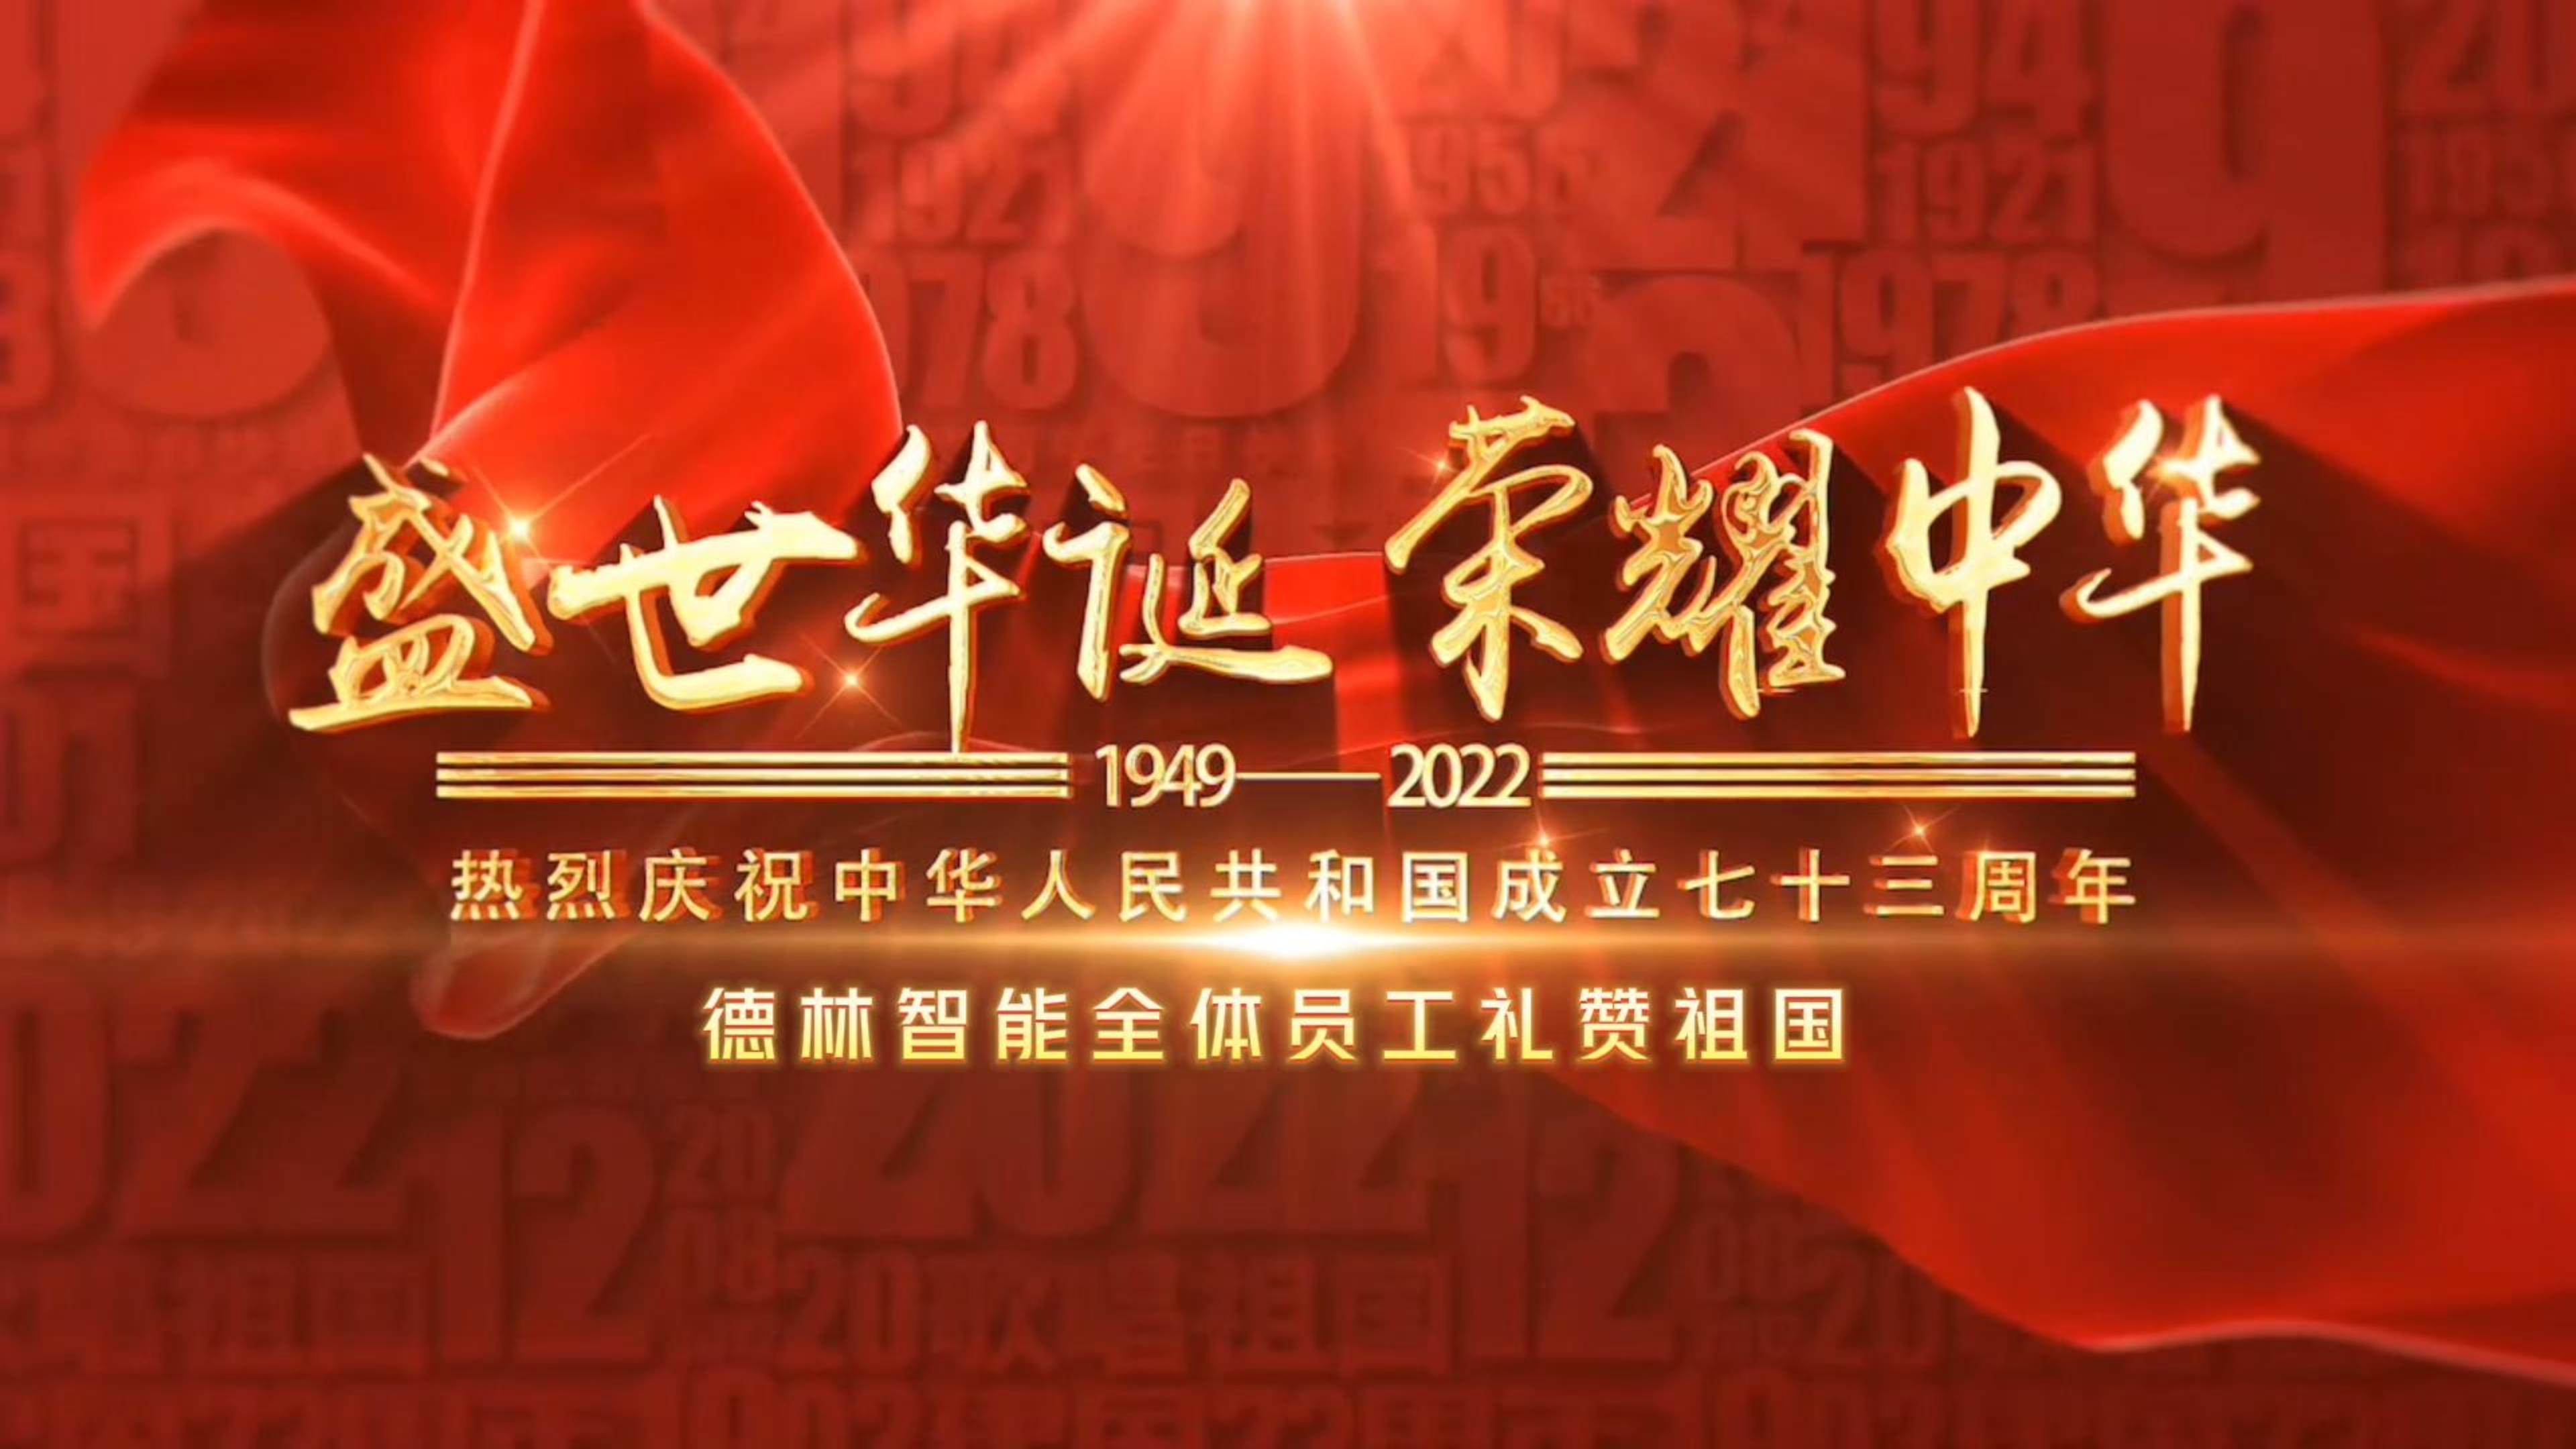 【德林资讯】庆祝中华人民共和国成立73周年